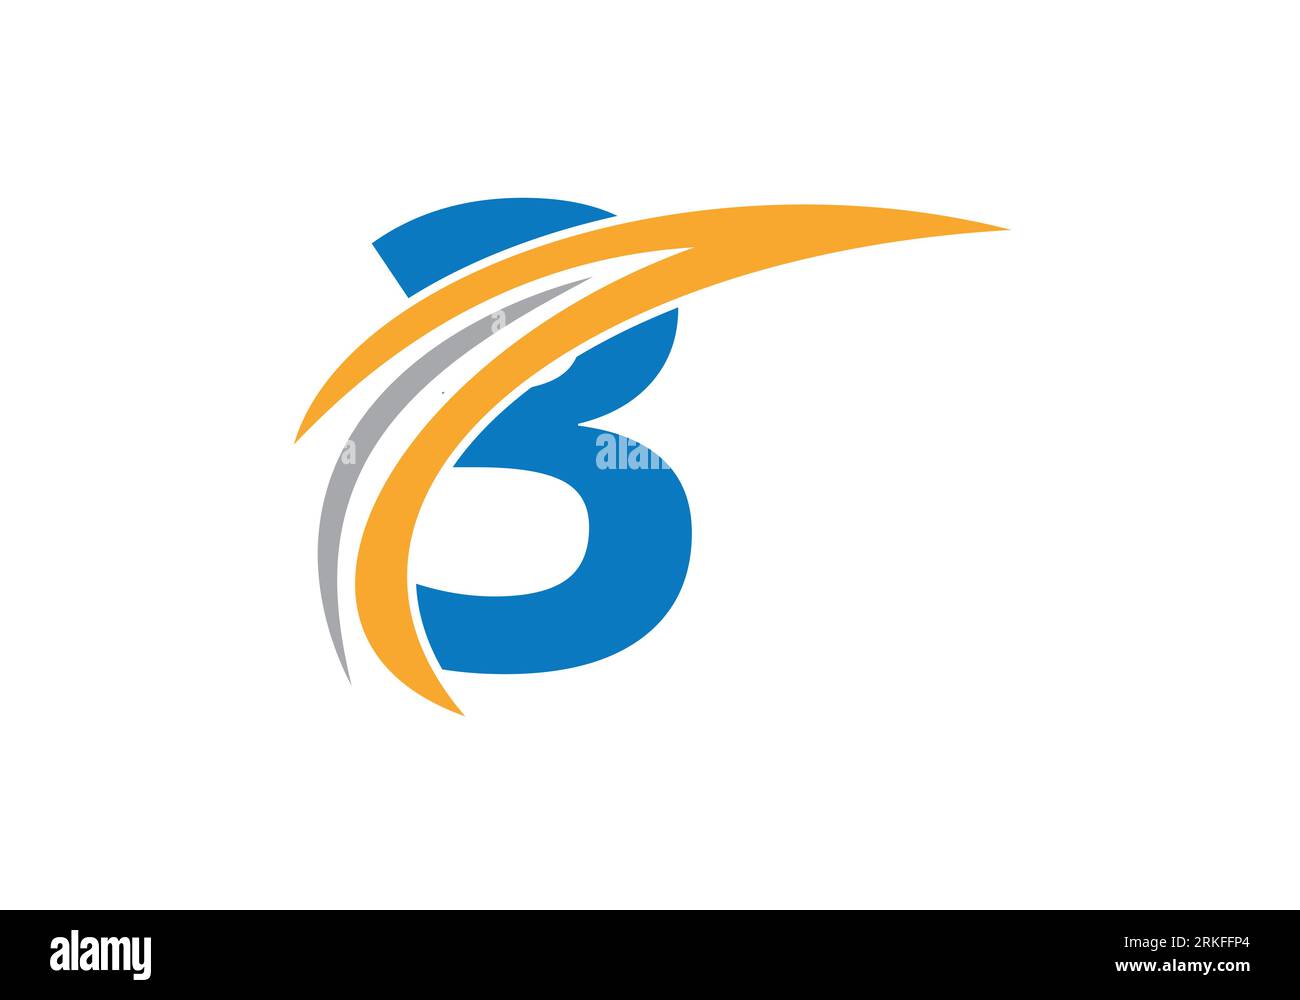 Initial 3 Letter Alphabet Logo Design Im Vektor-Format. Firmenlogo Für Geschäfts- Und Firmenidentität Stock Vektor